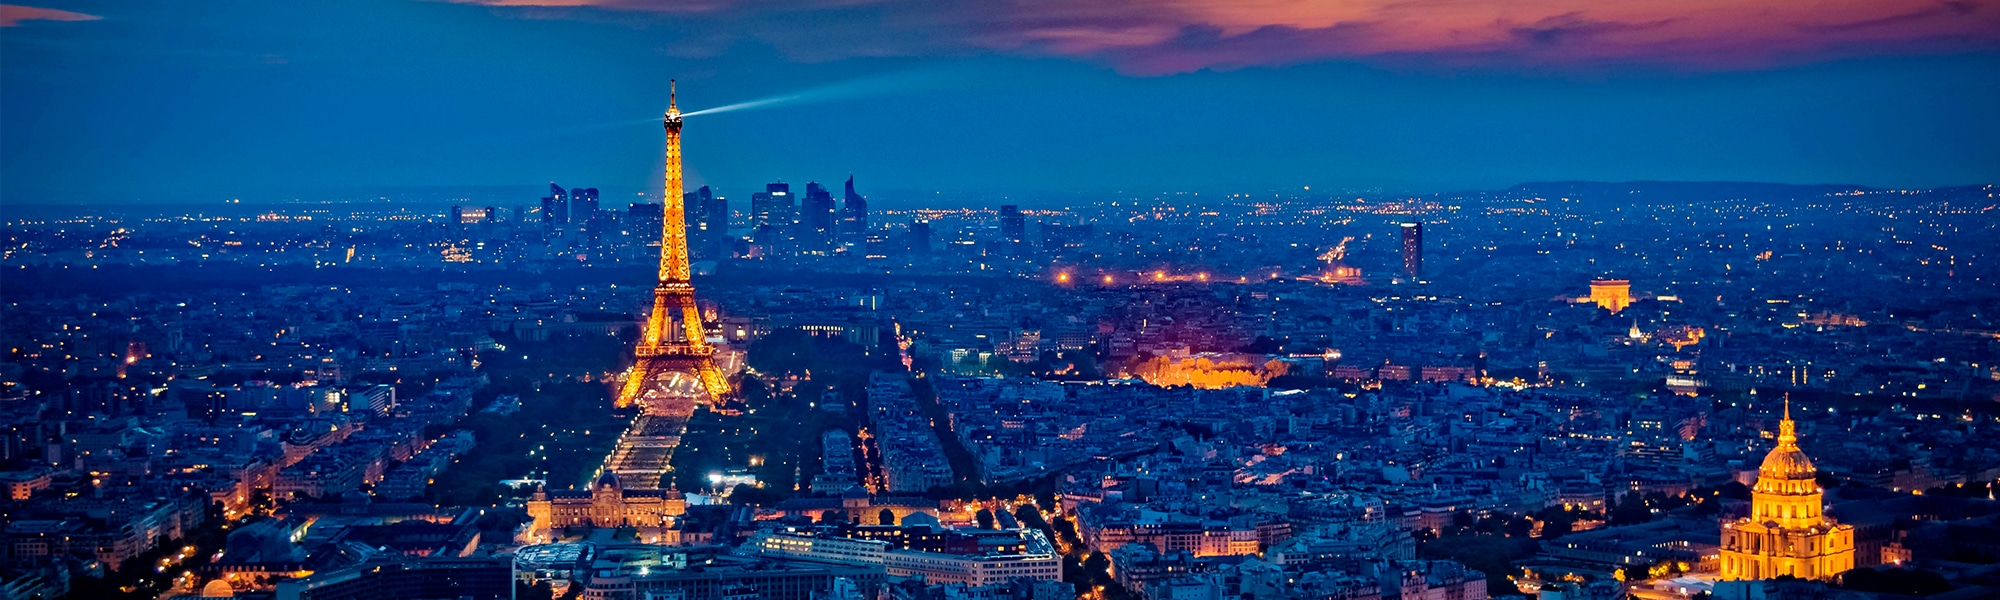 Paris vue du ciel nuit